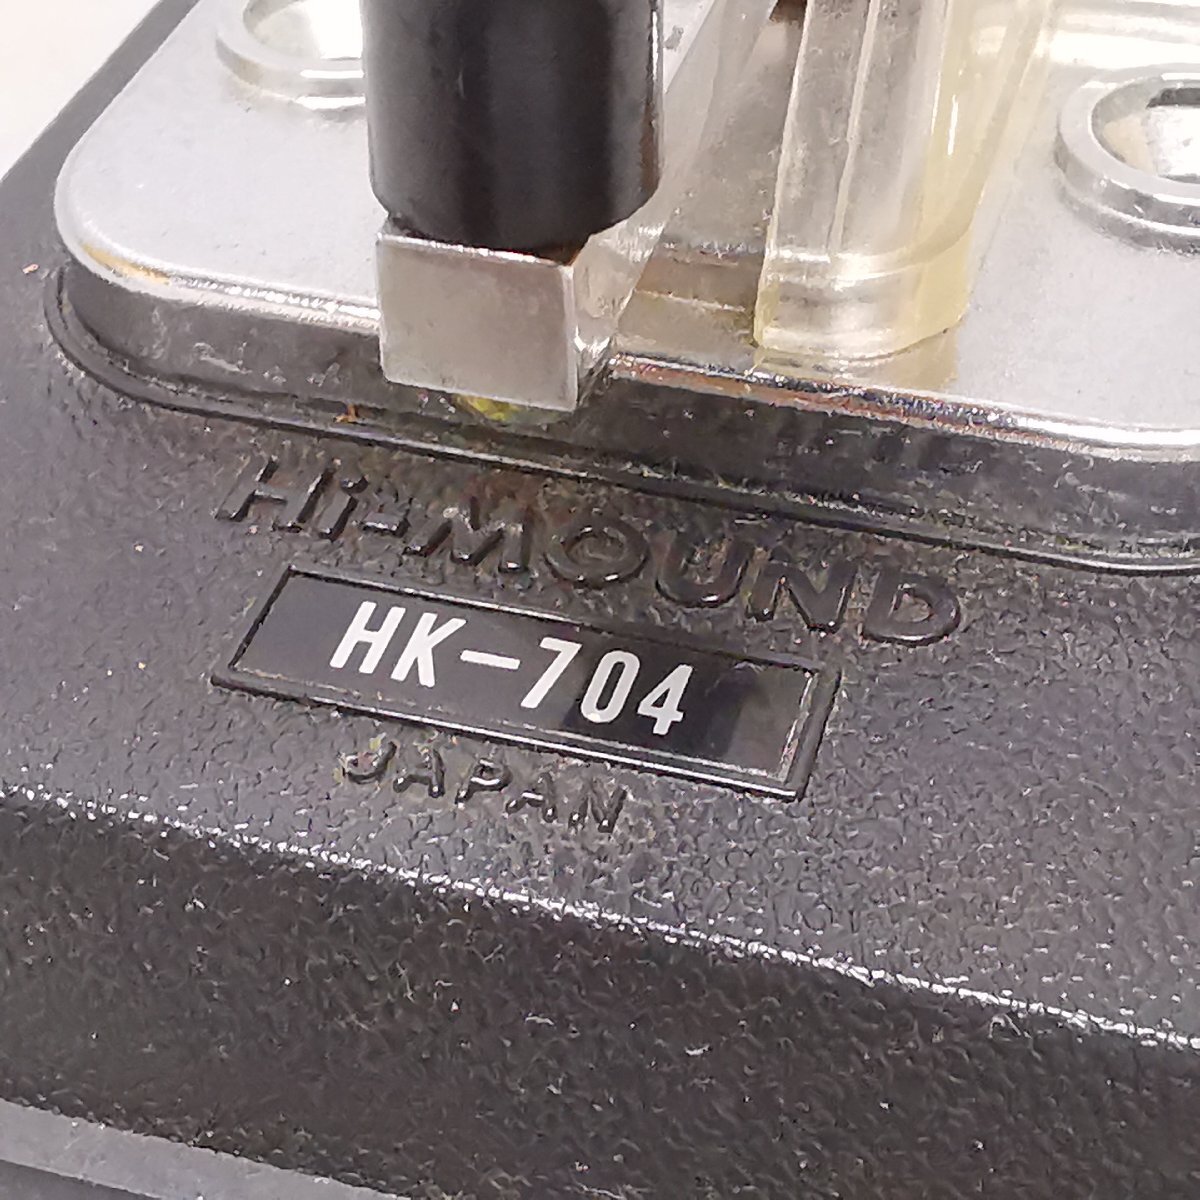 HIMOUND высокий Monde HK-704 электро- ключ длина электро- ключ длина .. электро- ключ Hi-Mound радиолюбительская связь молдинг s сигнал Showa Retro Vintage в это время моно текущее состояние товар Z5654